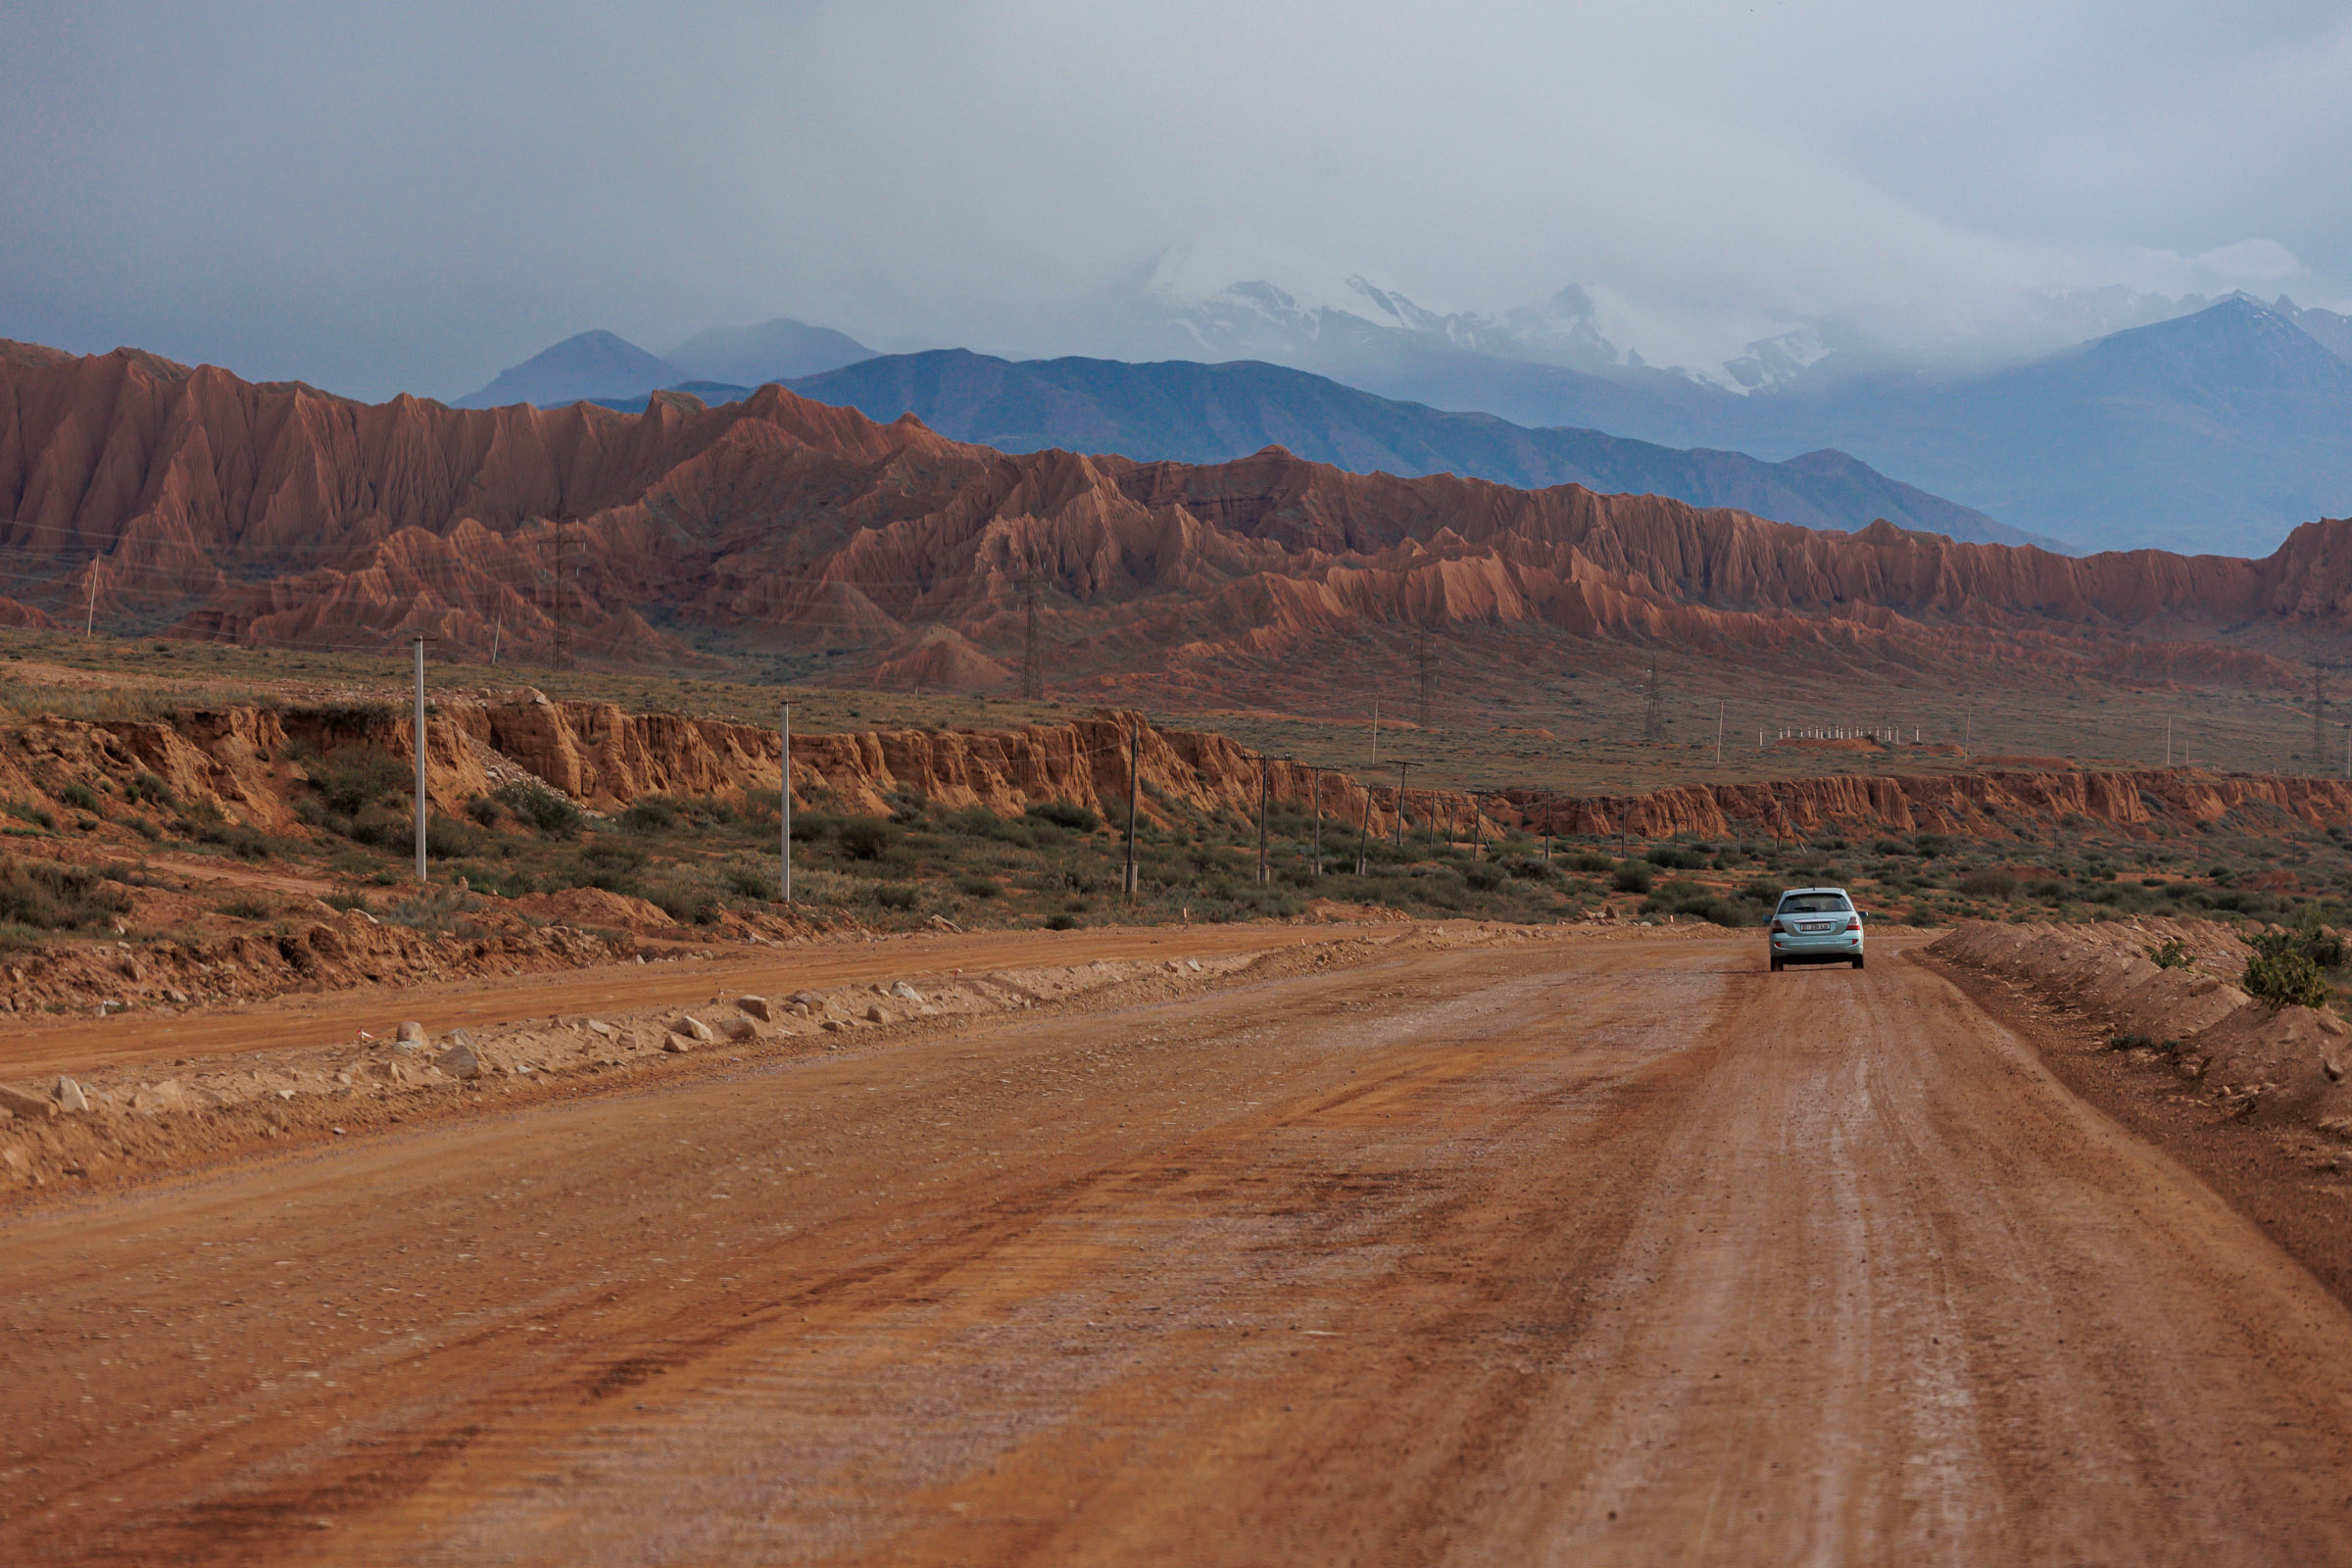 Пейзажи во всей Киргизии головокружительные. К сожалению, то же самое могу сказать и про дороги. Половина страны — в ремонтах и щебенке, но скоро должно стать лучше